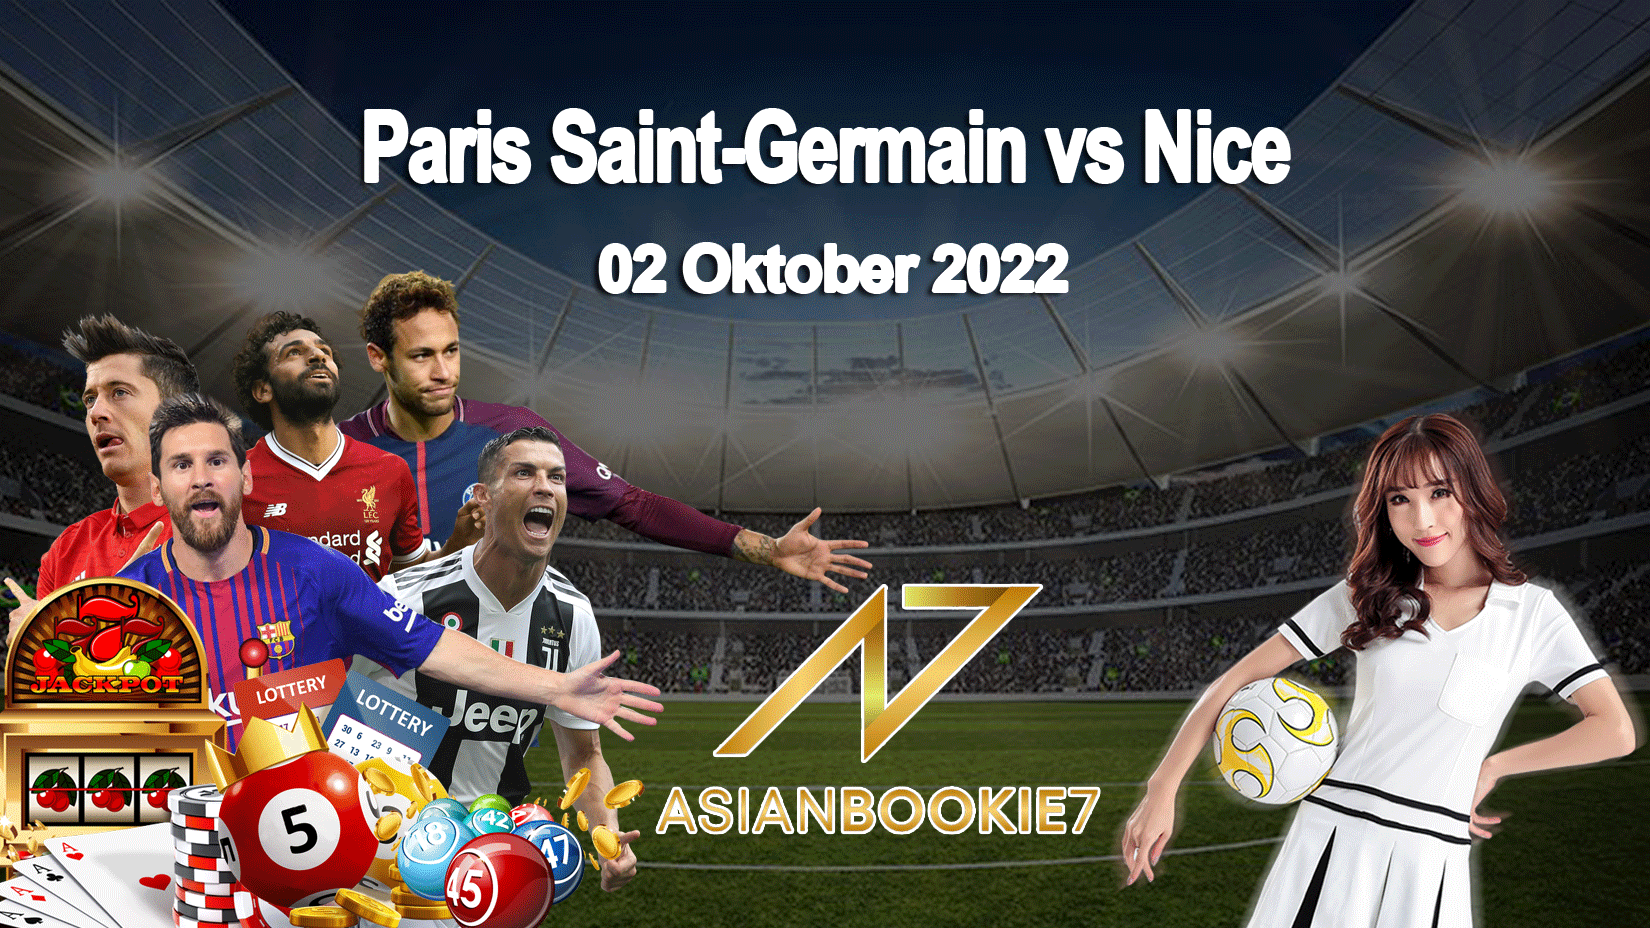 Prediksi Paris Saint-Germain vs Nice 02 Oktober 2022